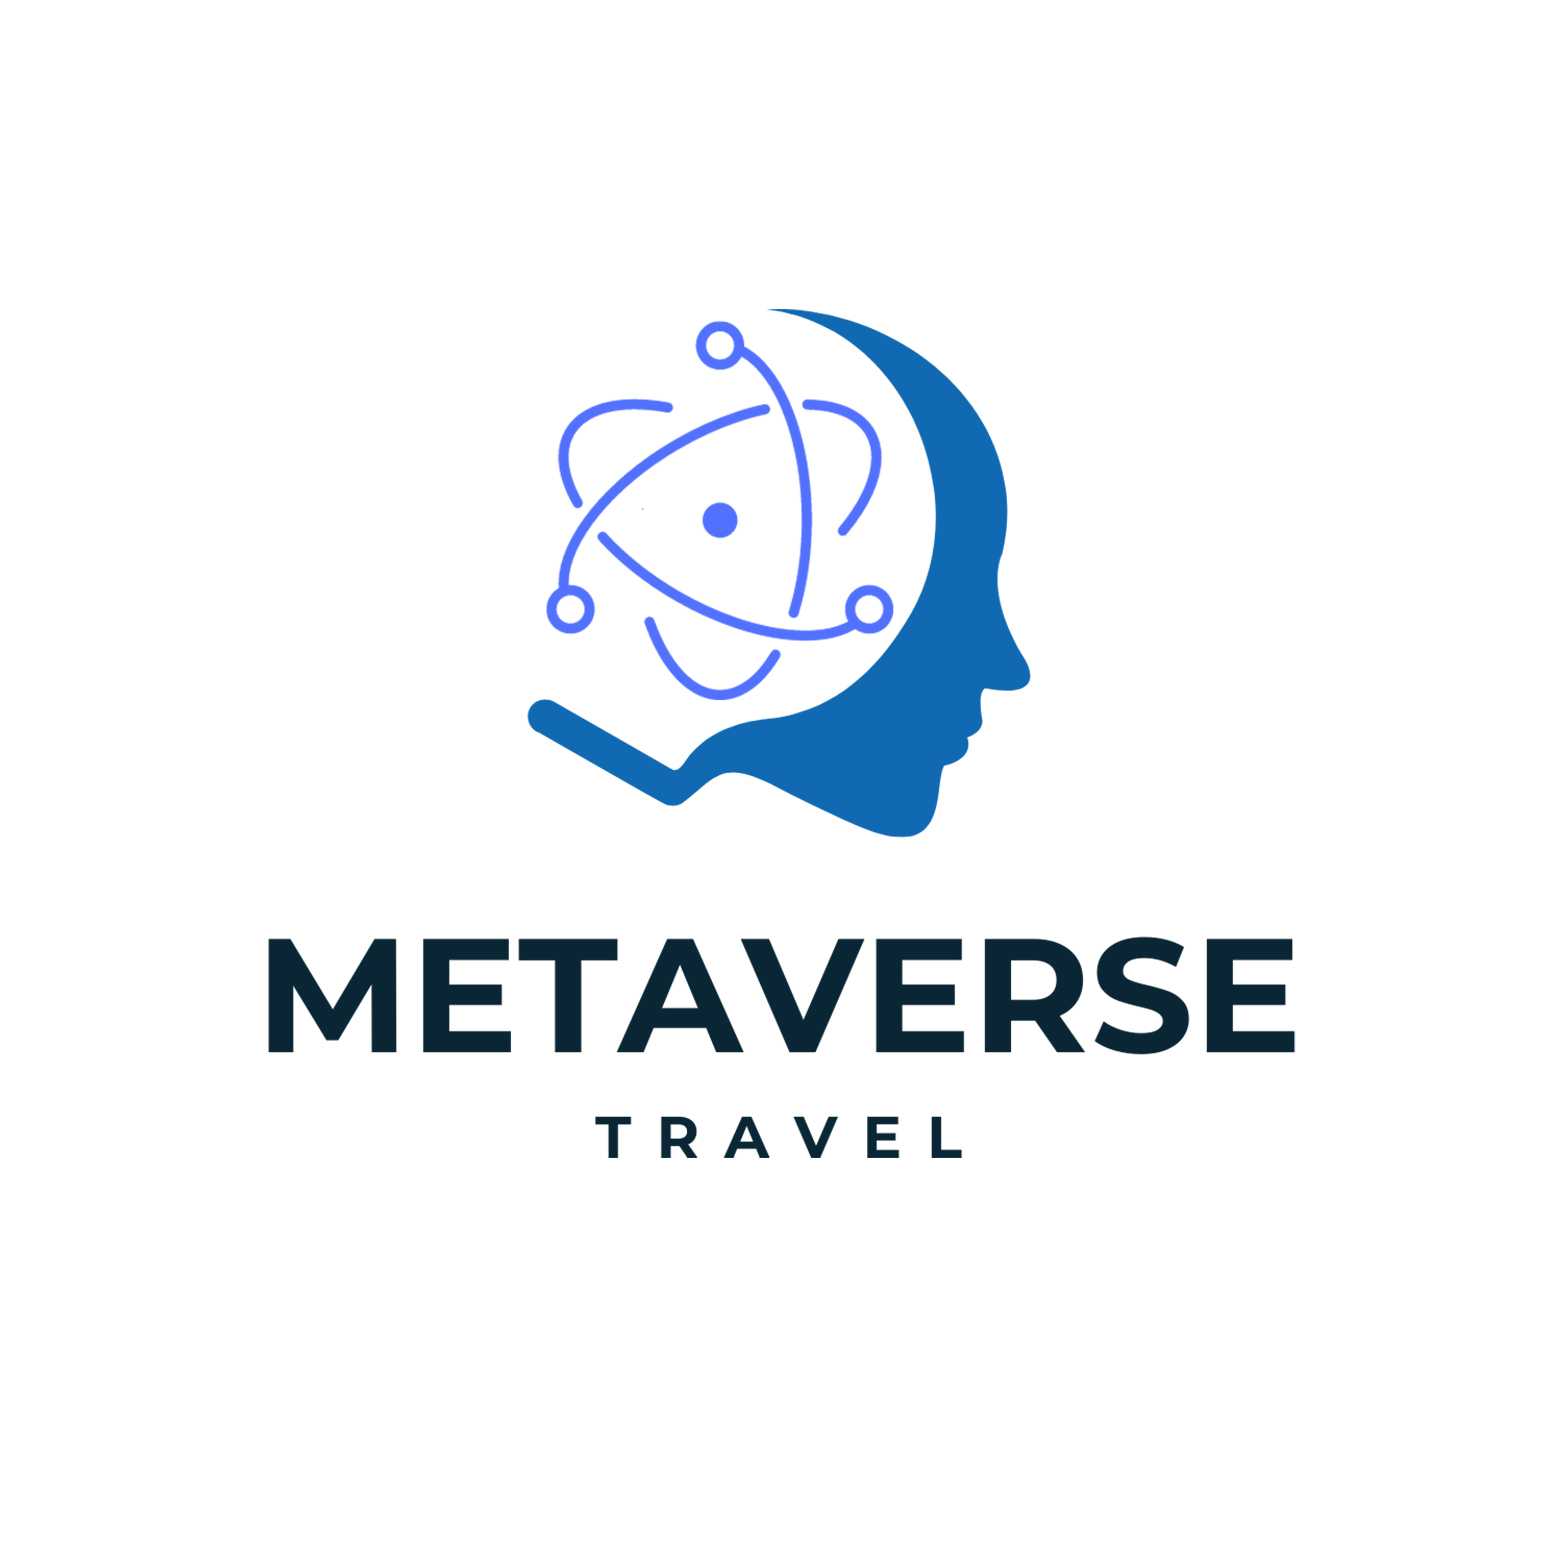 METAVERSE TRAVEL Logo